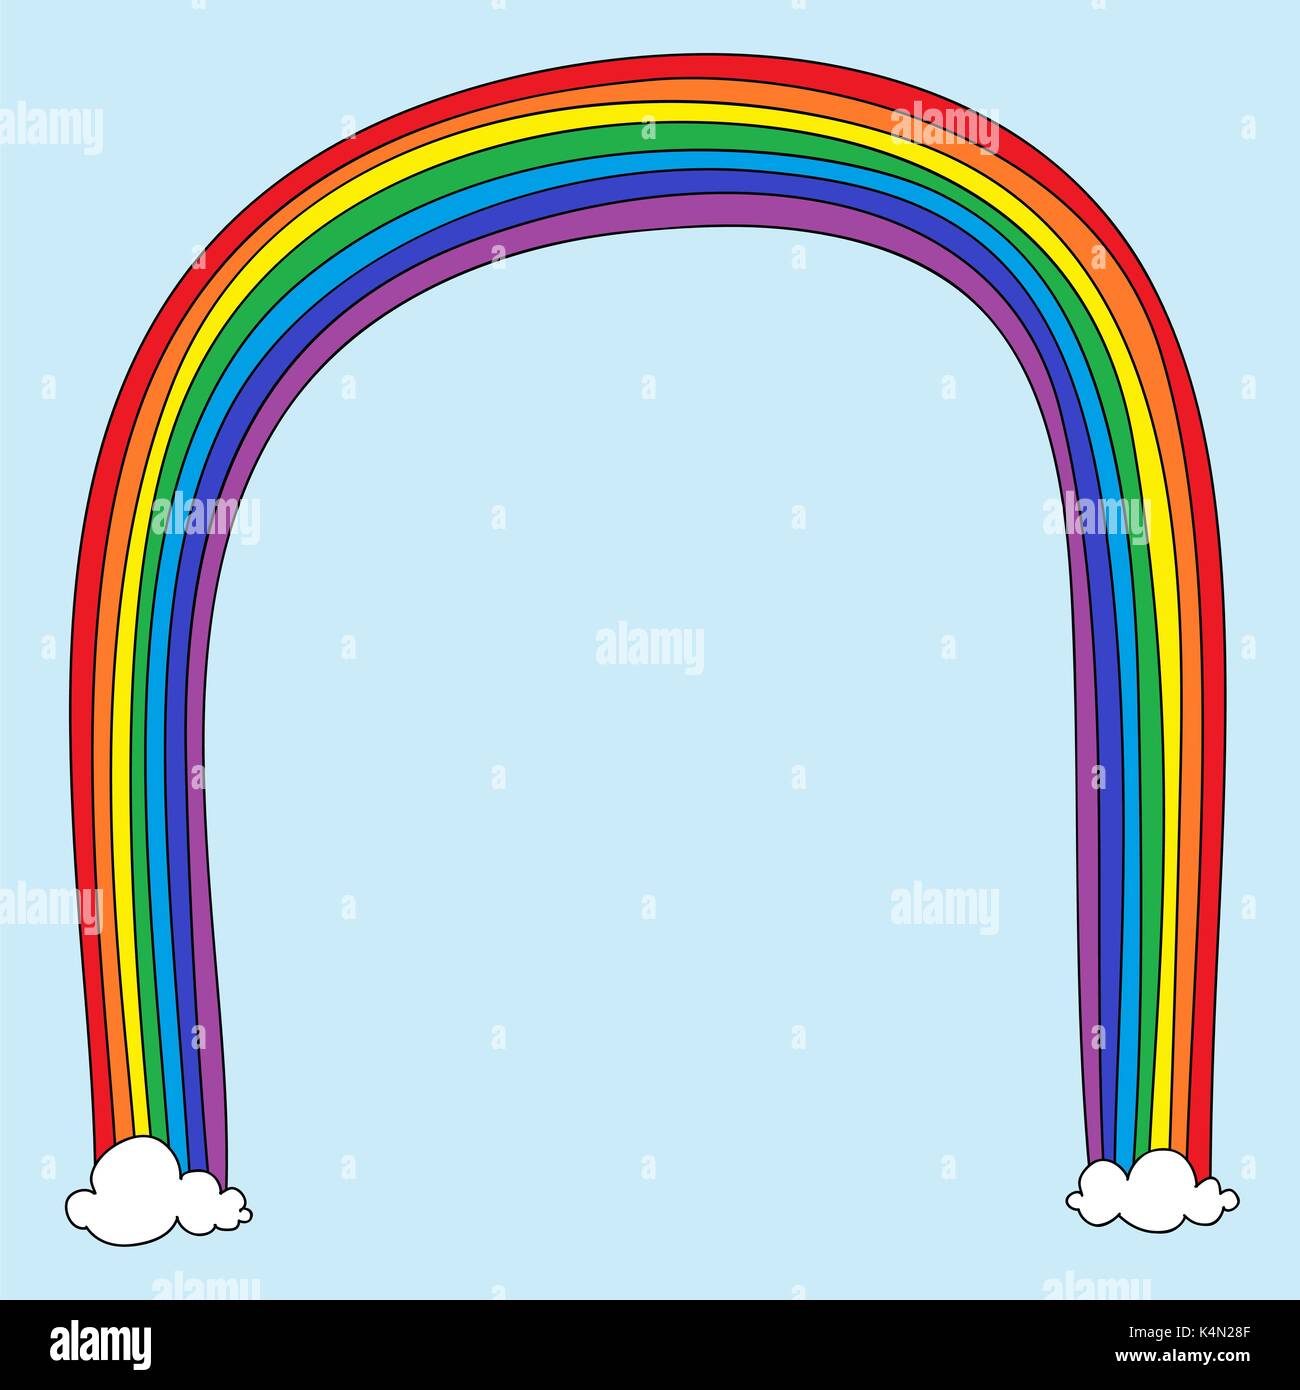 Niedlich, kindisch rainbow Doodle mit Platz für Sie. Für Kinder Veranstaltung Plakat oder Einladung geeignet. Stock Vektor